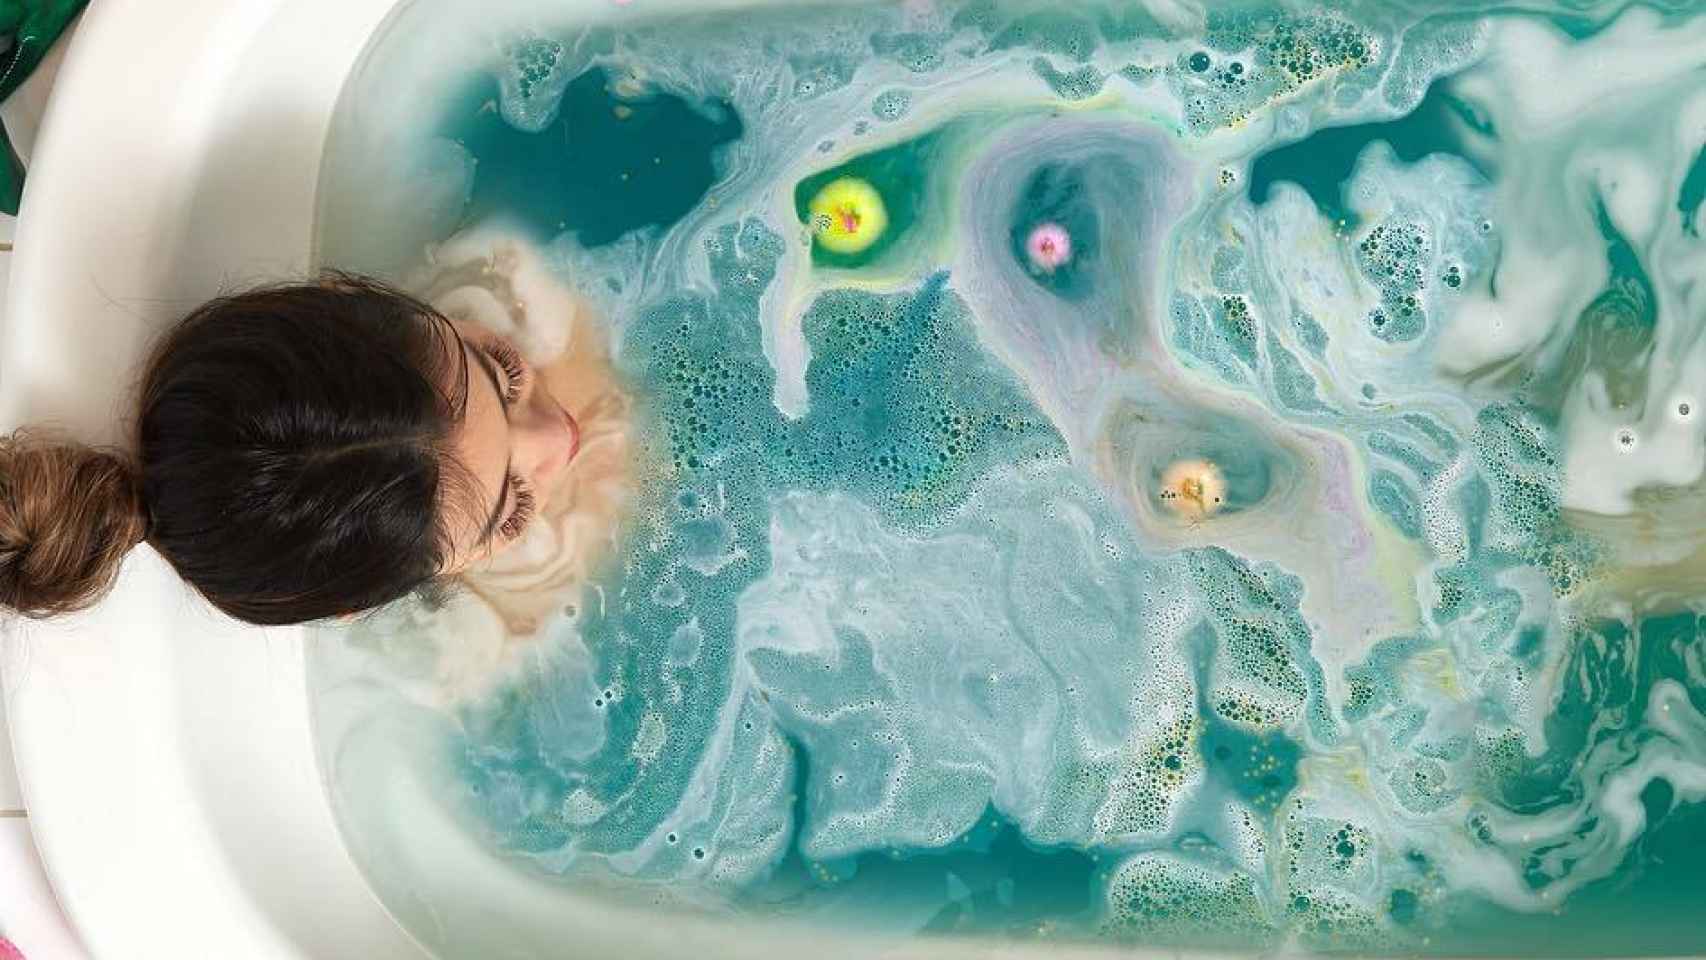 Bombas de baño, convierte tu baño en una experiencia más relajante